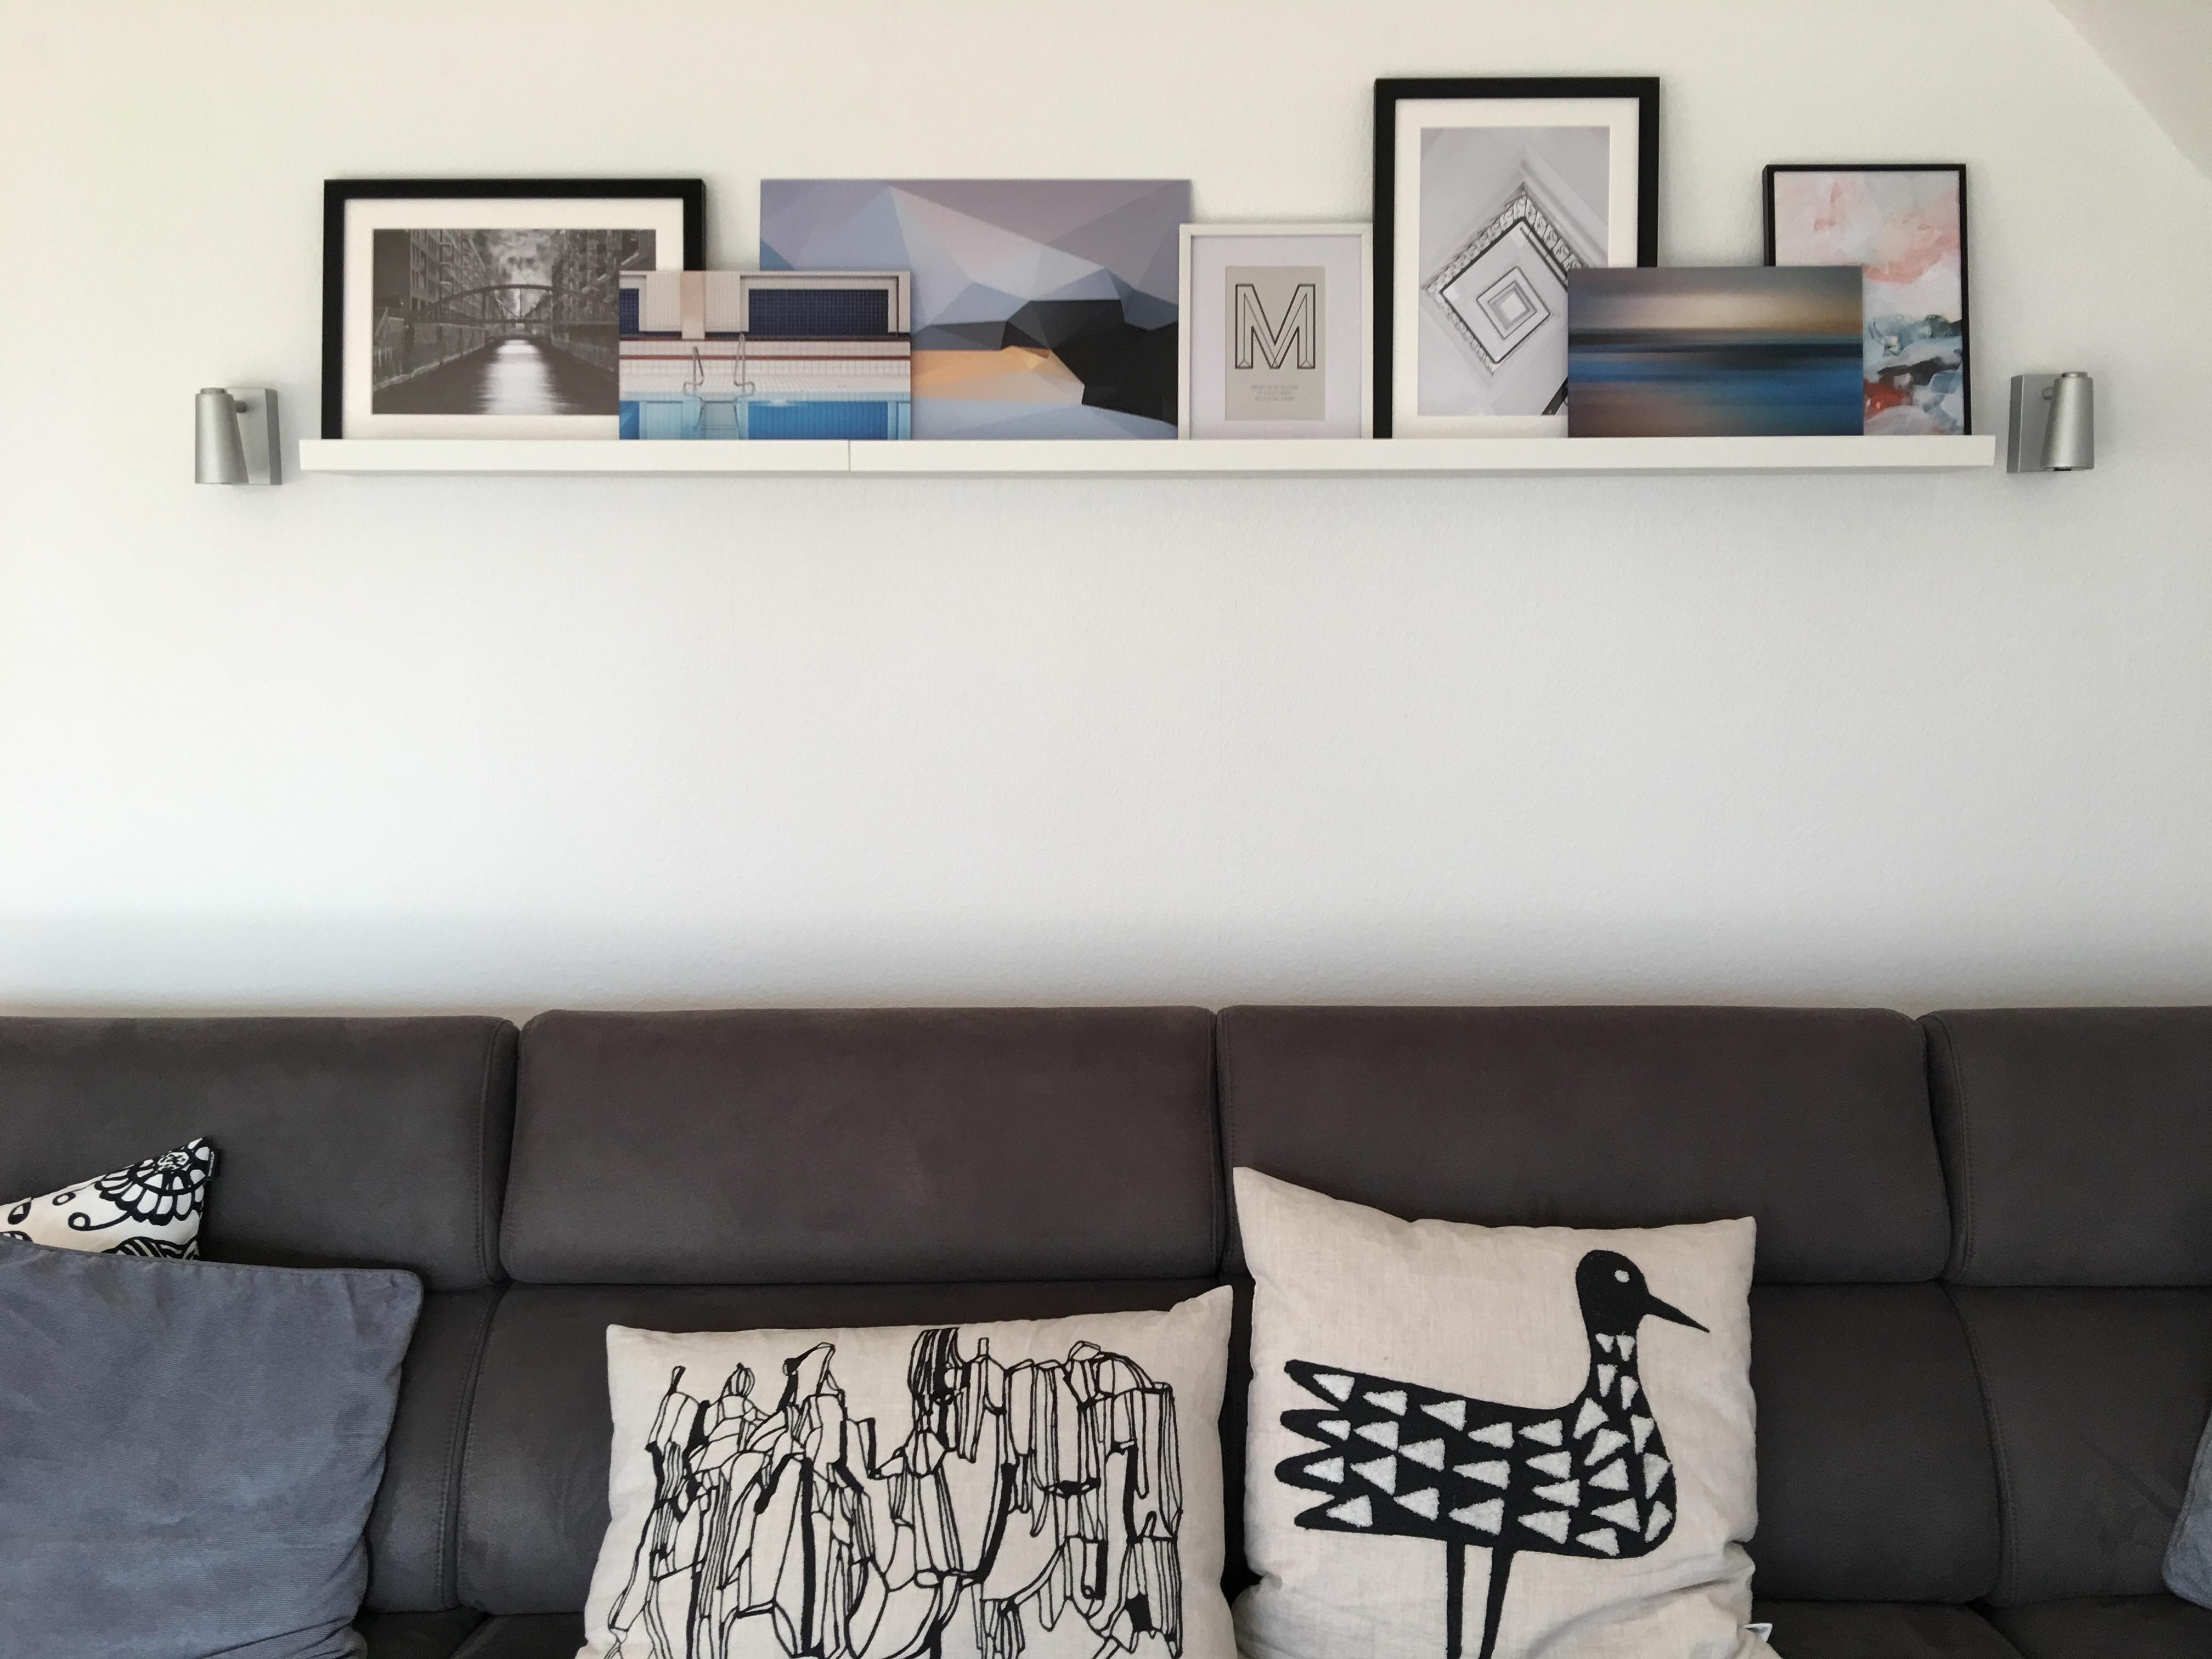 Bilderwand ade!
#bilderleiste #klarelinie #homedecor #wohnzimmer #kissen #couch 